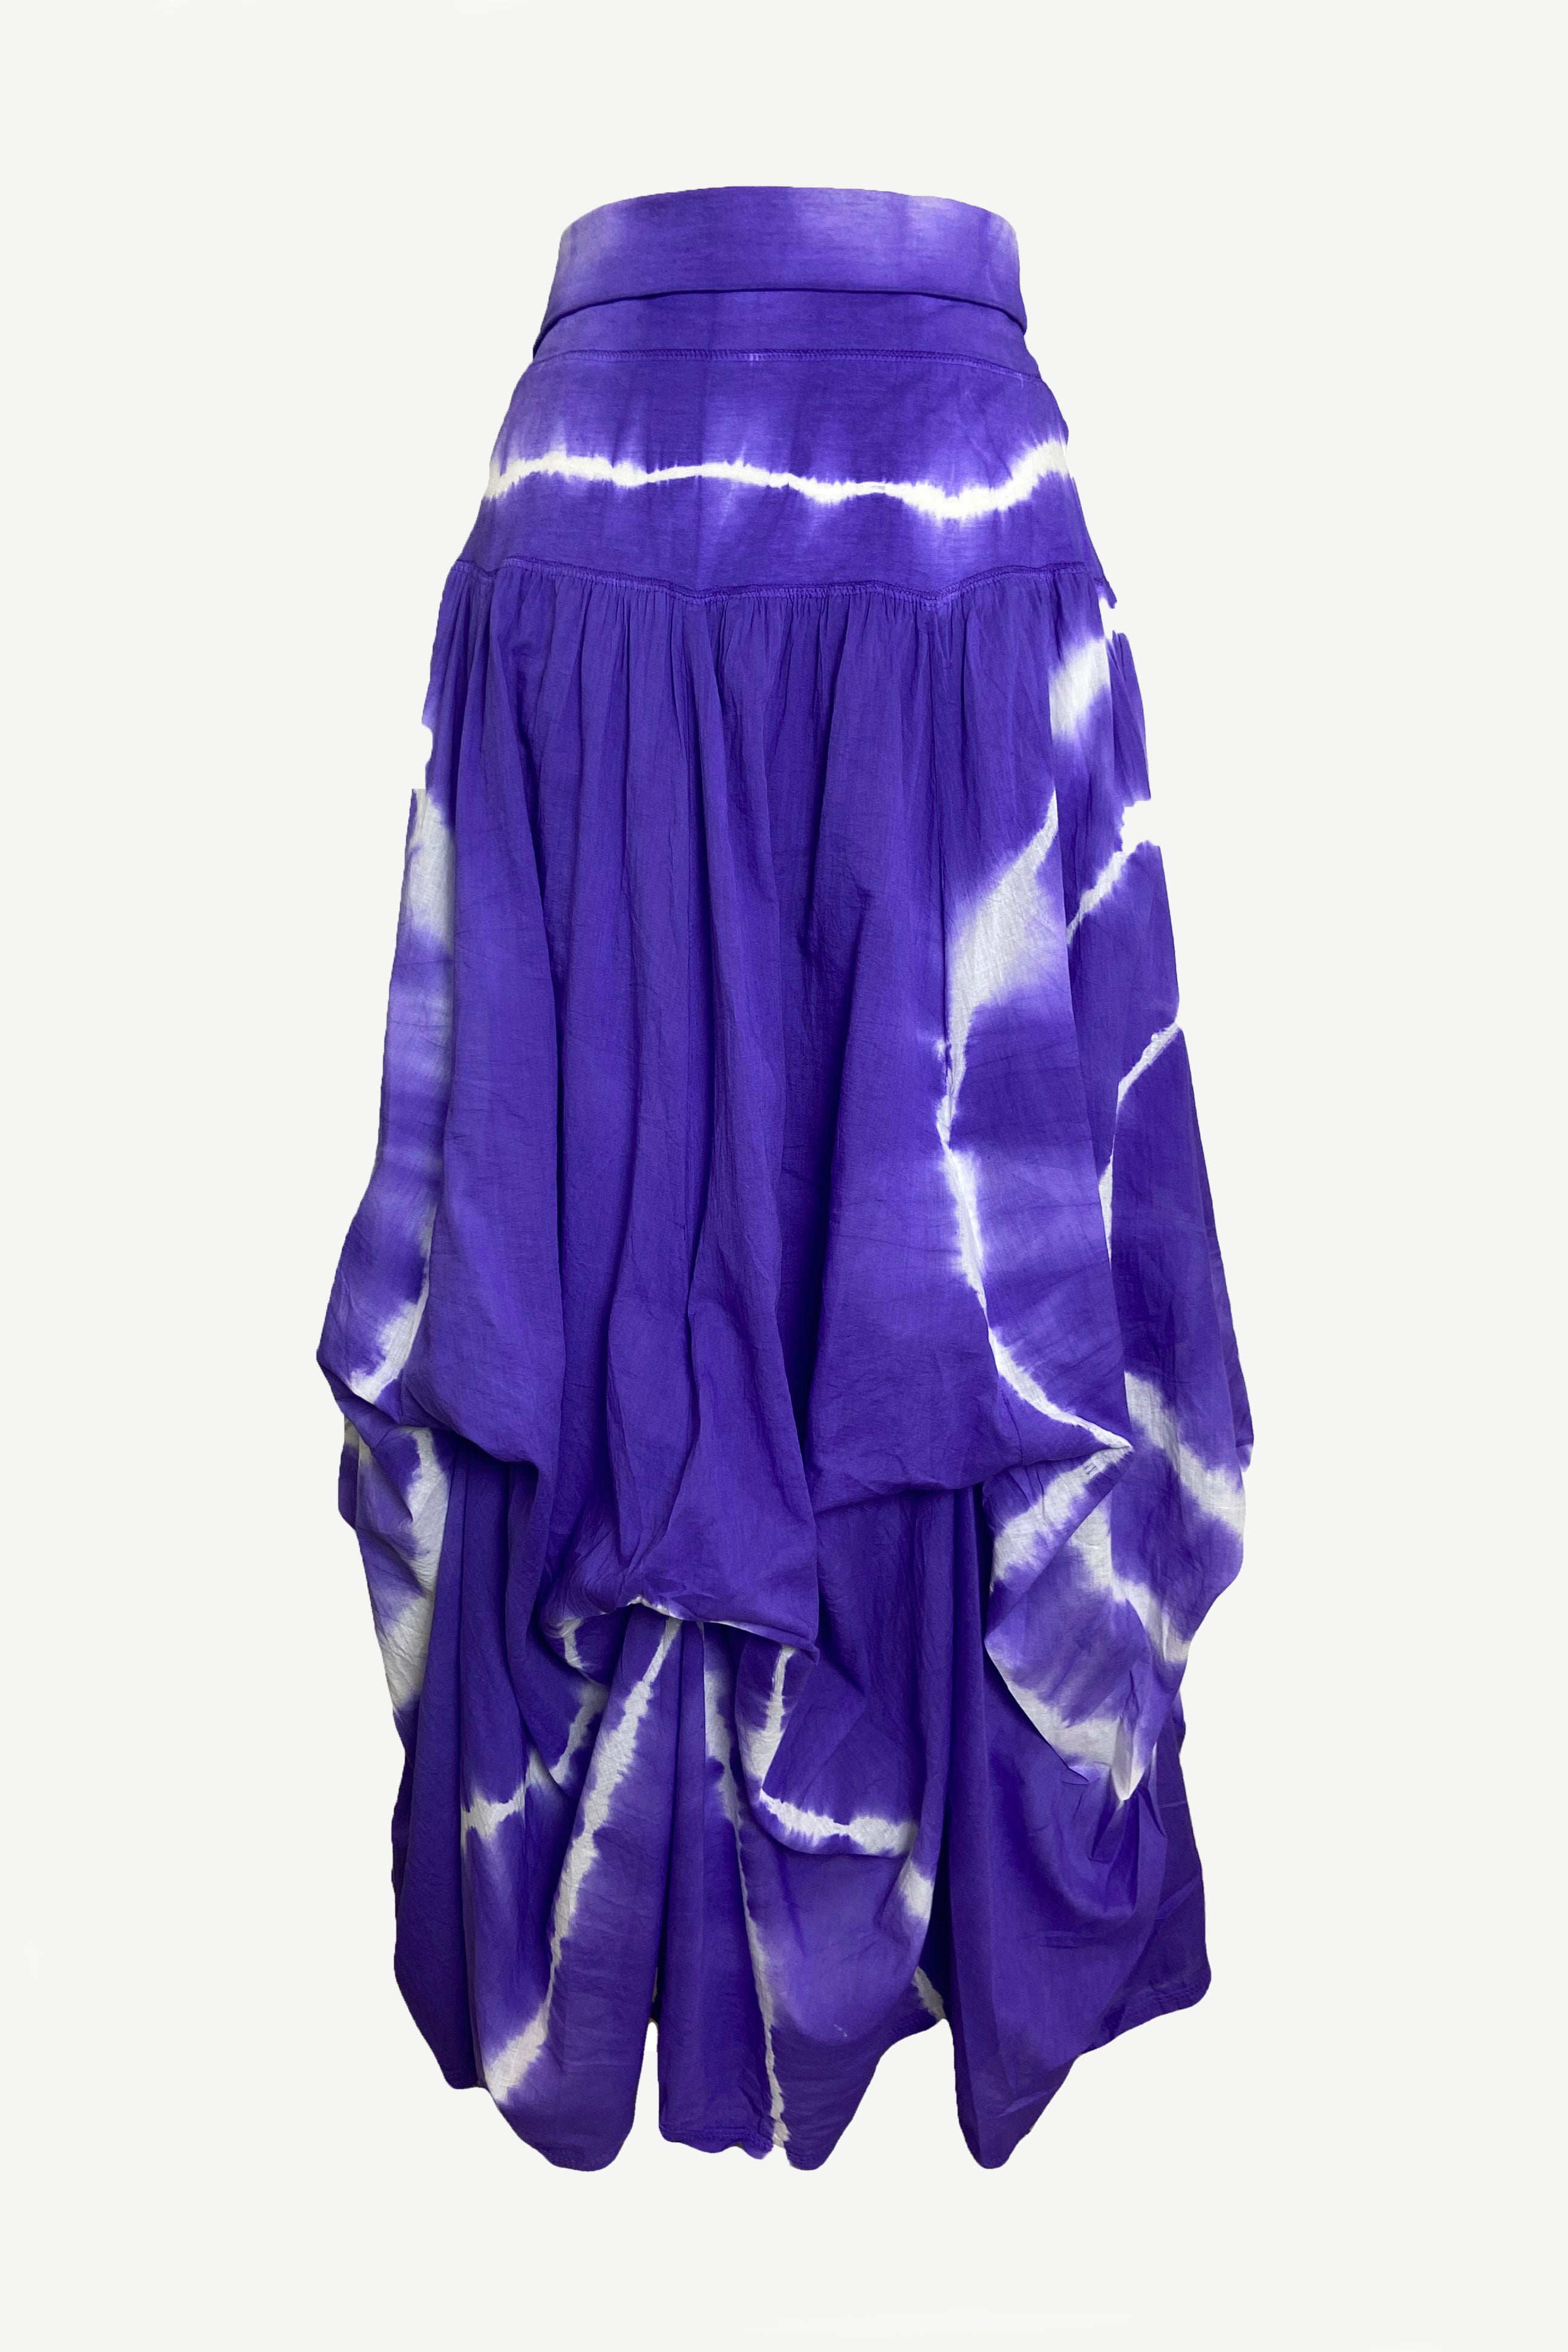 1131 Skt Convertible Ripple Tie Dye Long Cotton Skirt